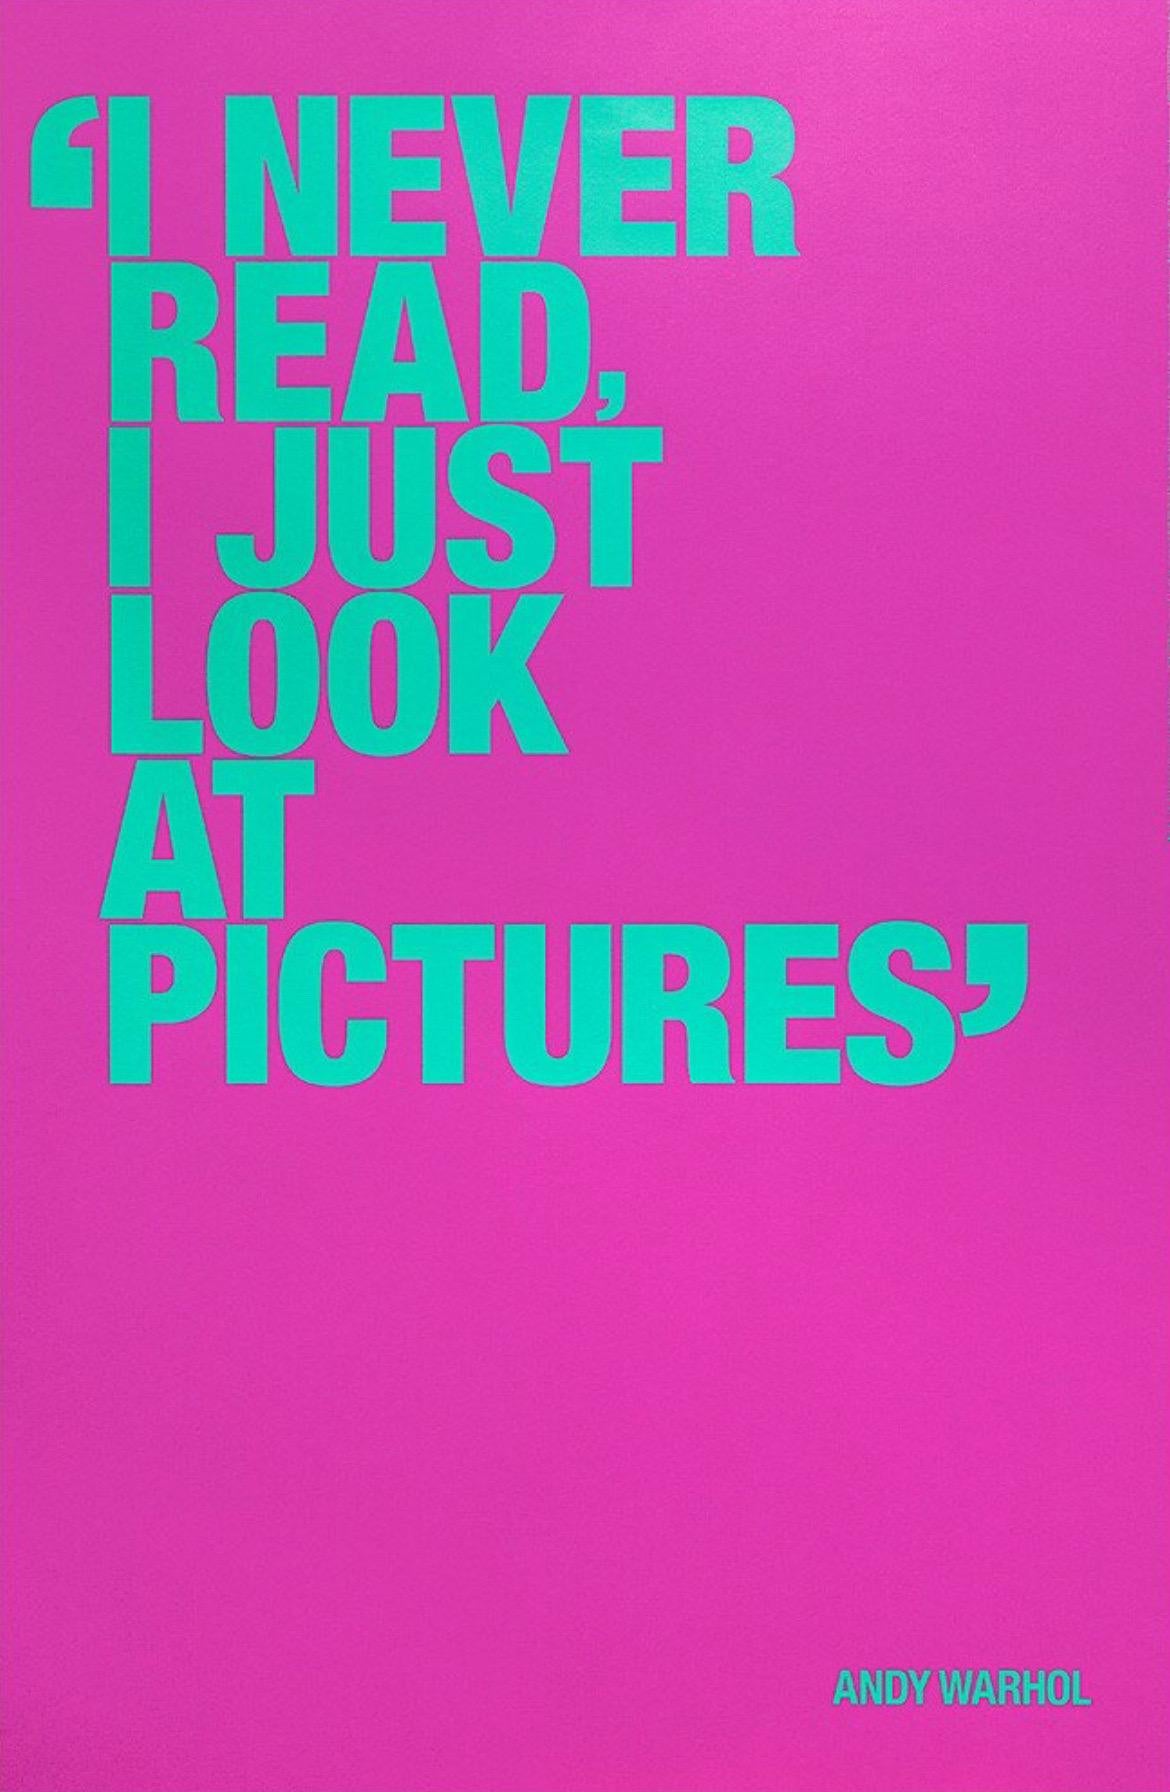 Andy Warhol, I Never Read (Spezialausgabe)

Siebdruck auf Colourplan-Papier (270 g/m²), einem ungestrichenen Premium-Farbpapier aus dem Vereinigten Königreich

64 x 97 cm ( 25.19 x 38.18 in) 

Andy Warhol konnte eine Idee oder ein Bild